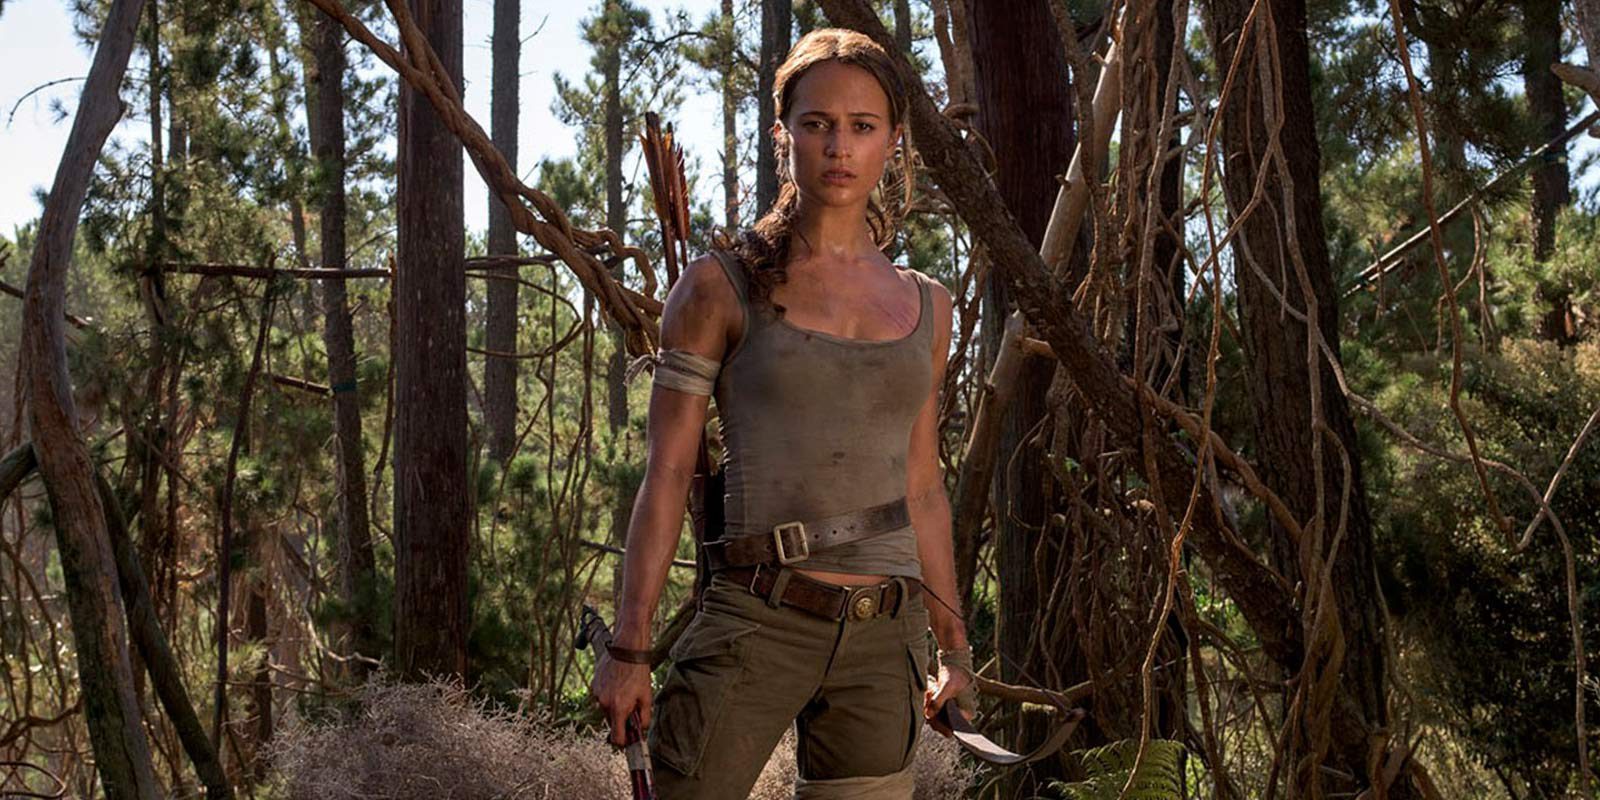 Nueva imagen de Alicia Vikander como Lara Croft en 'Tomb Raider'